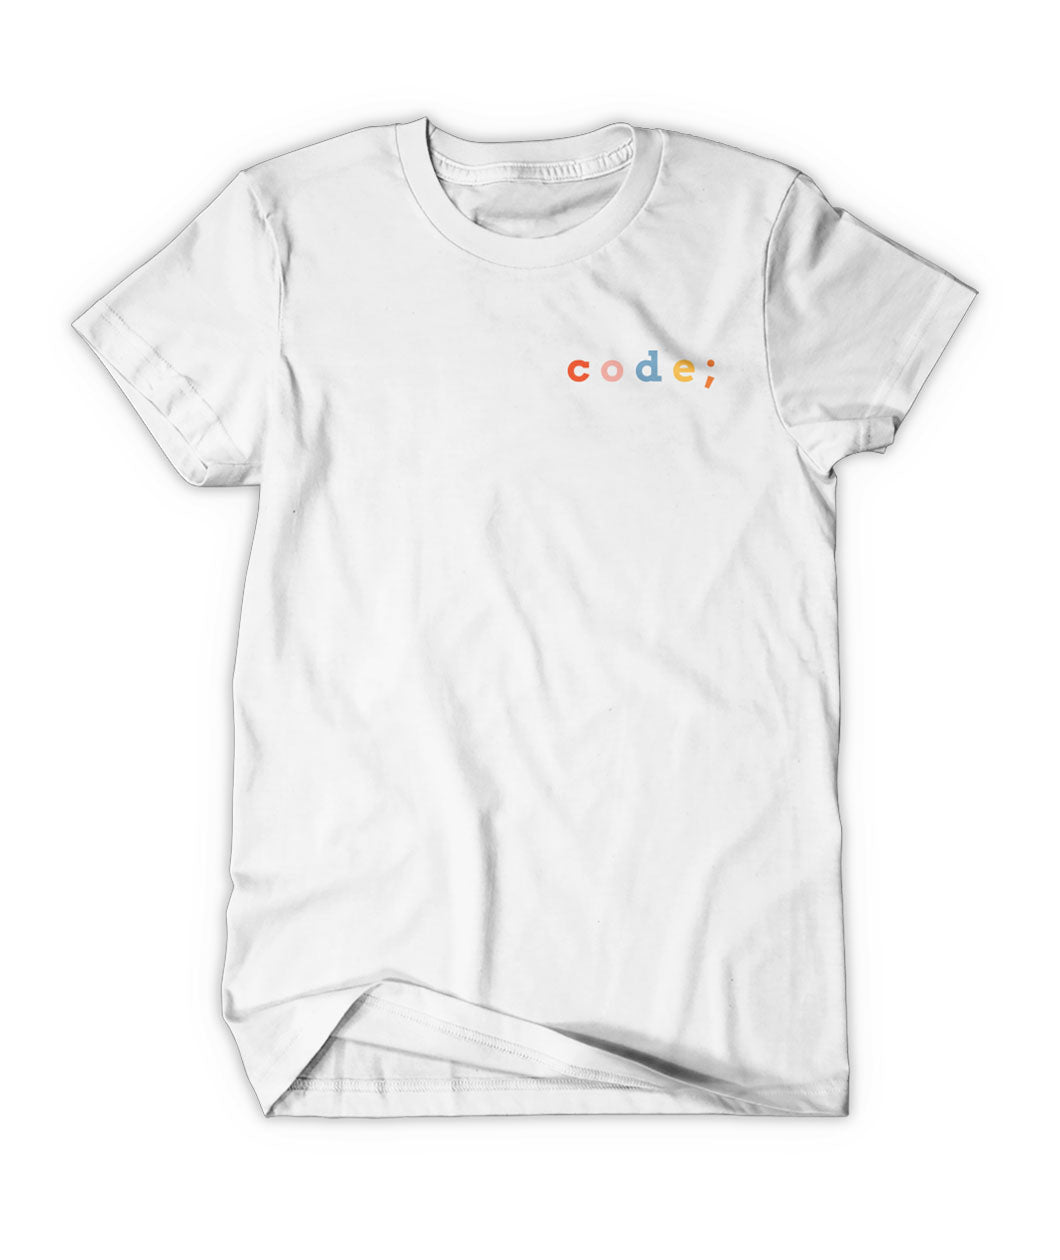 Shirt for : google